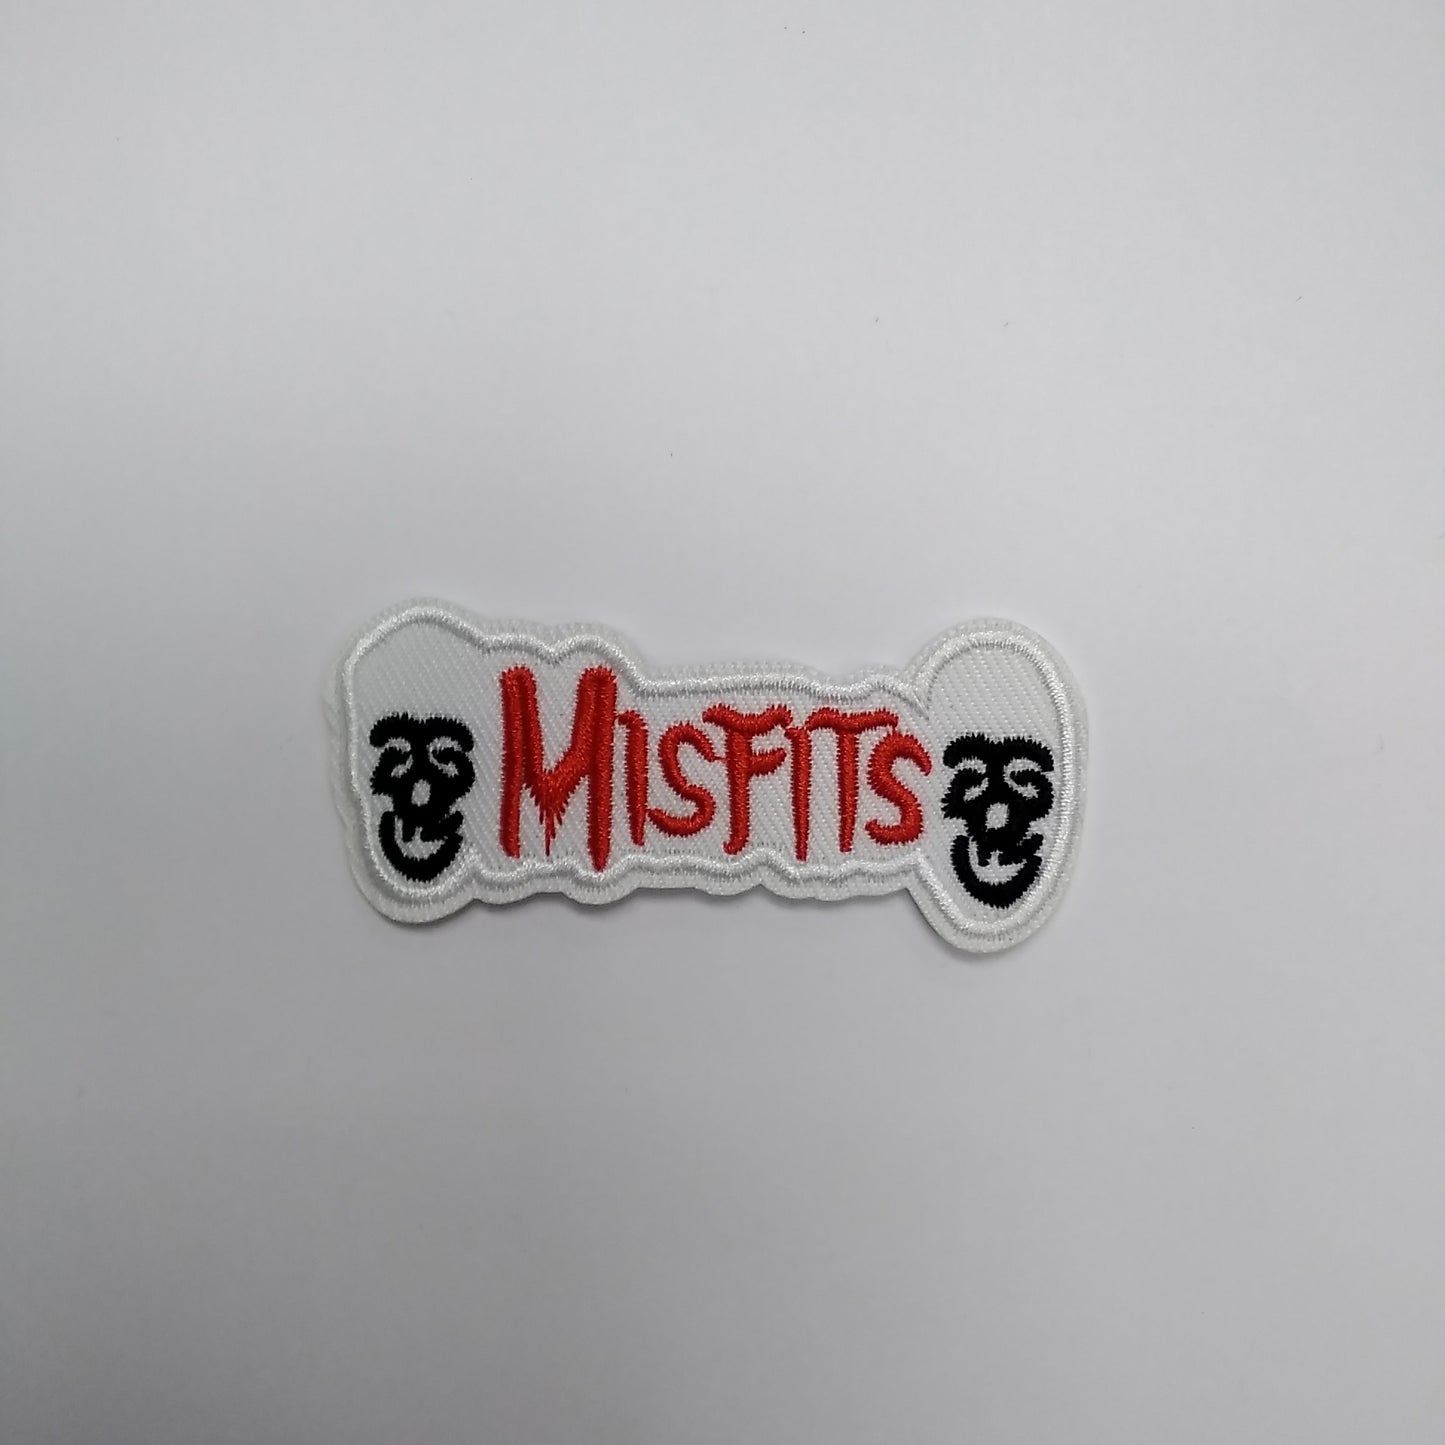 Misfits patches